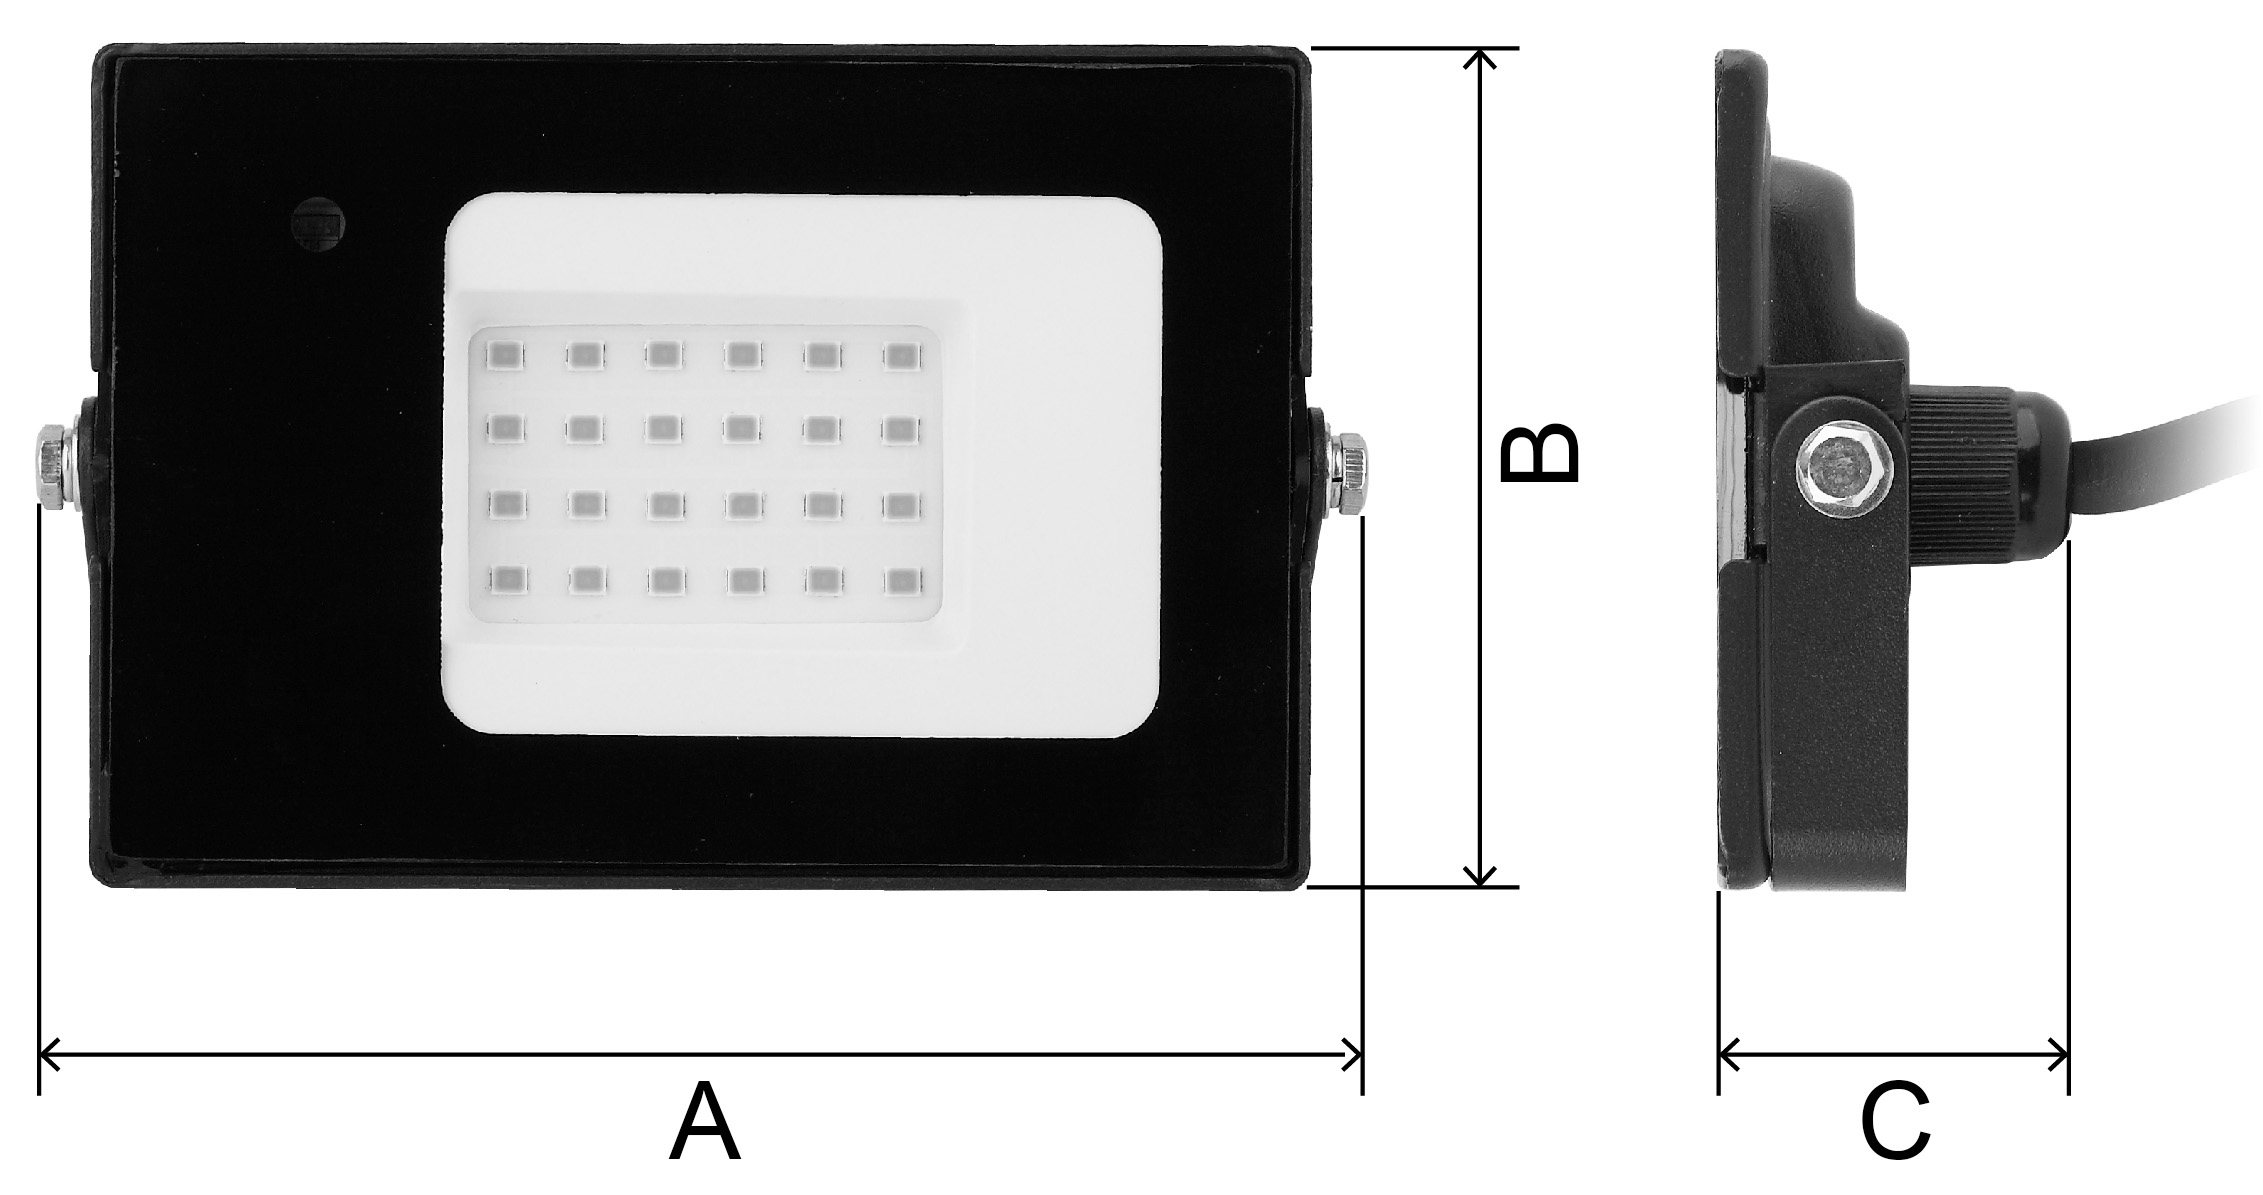 Прожектор светодиодный ЭРА LPR-041 50 Вт с датчиком движения, цветовая температура 6500 К, световой поток 3500 Лм, IP65, форма – прямоугольник, цвет - черный